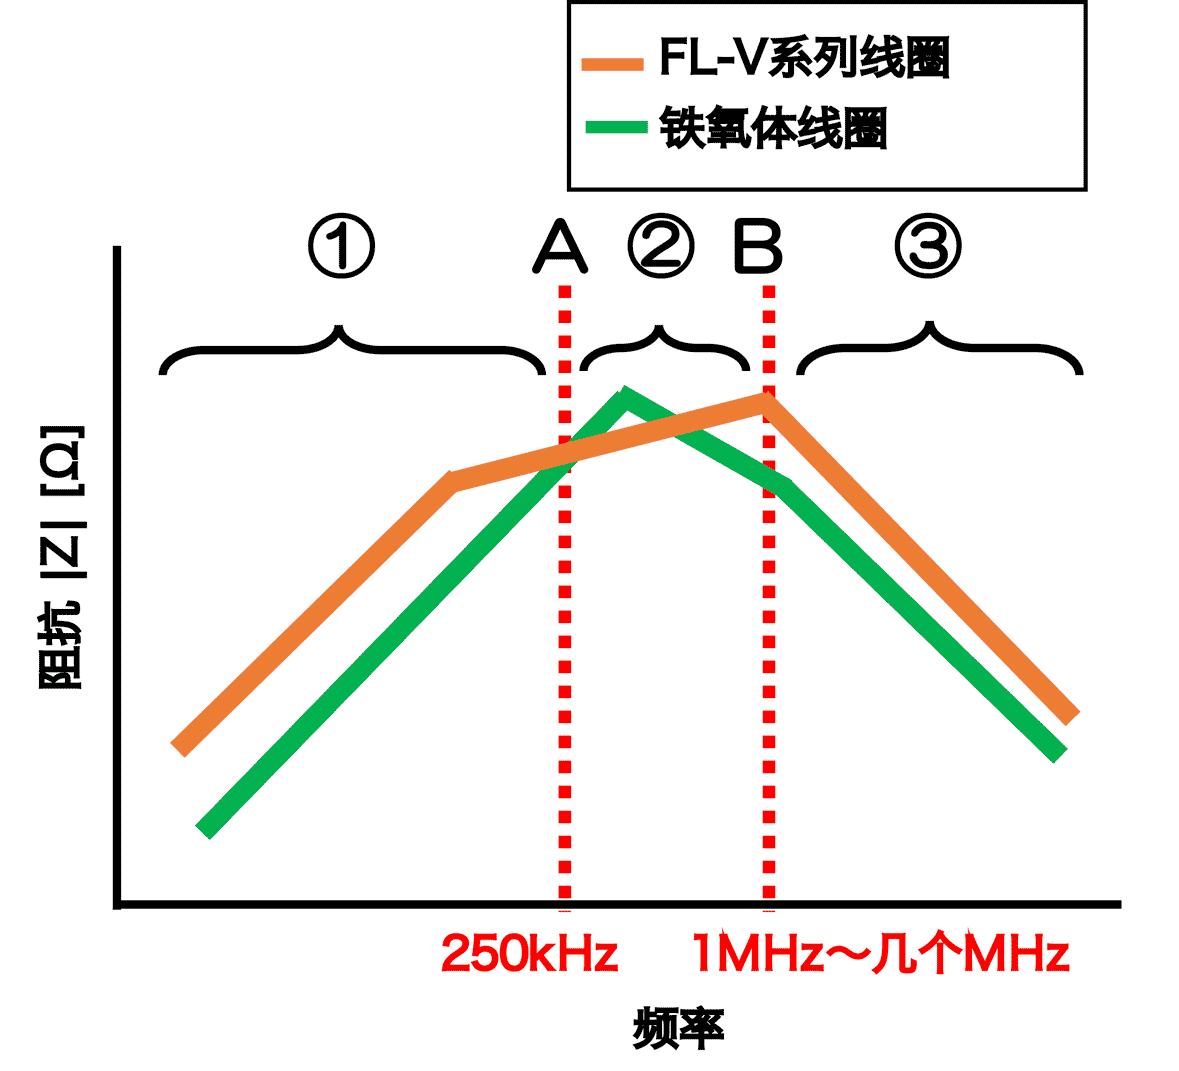 铁氧体线圈和FL-V线圈之间的阻抗比较